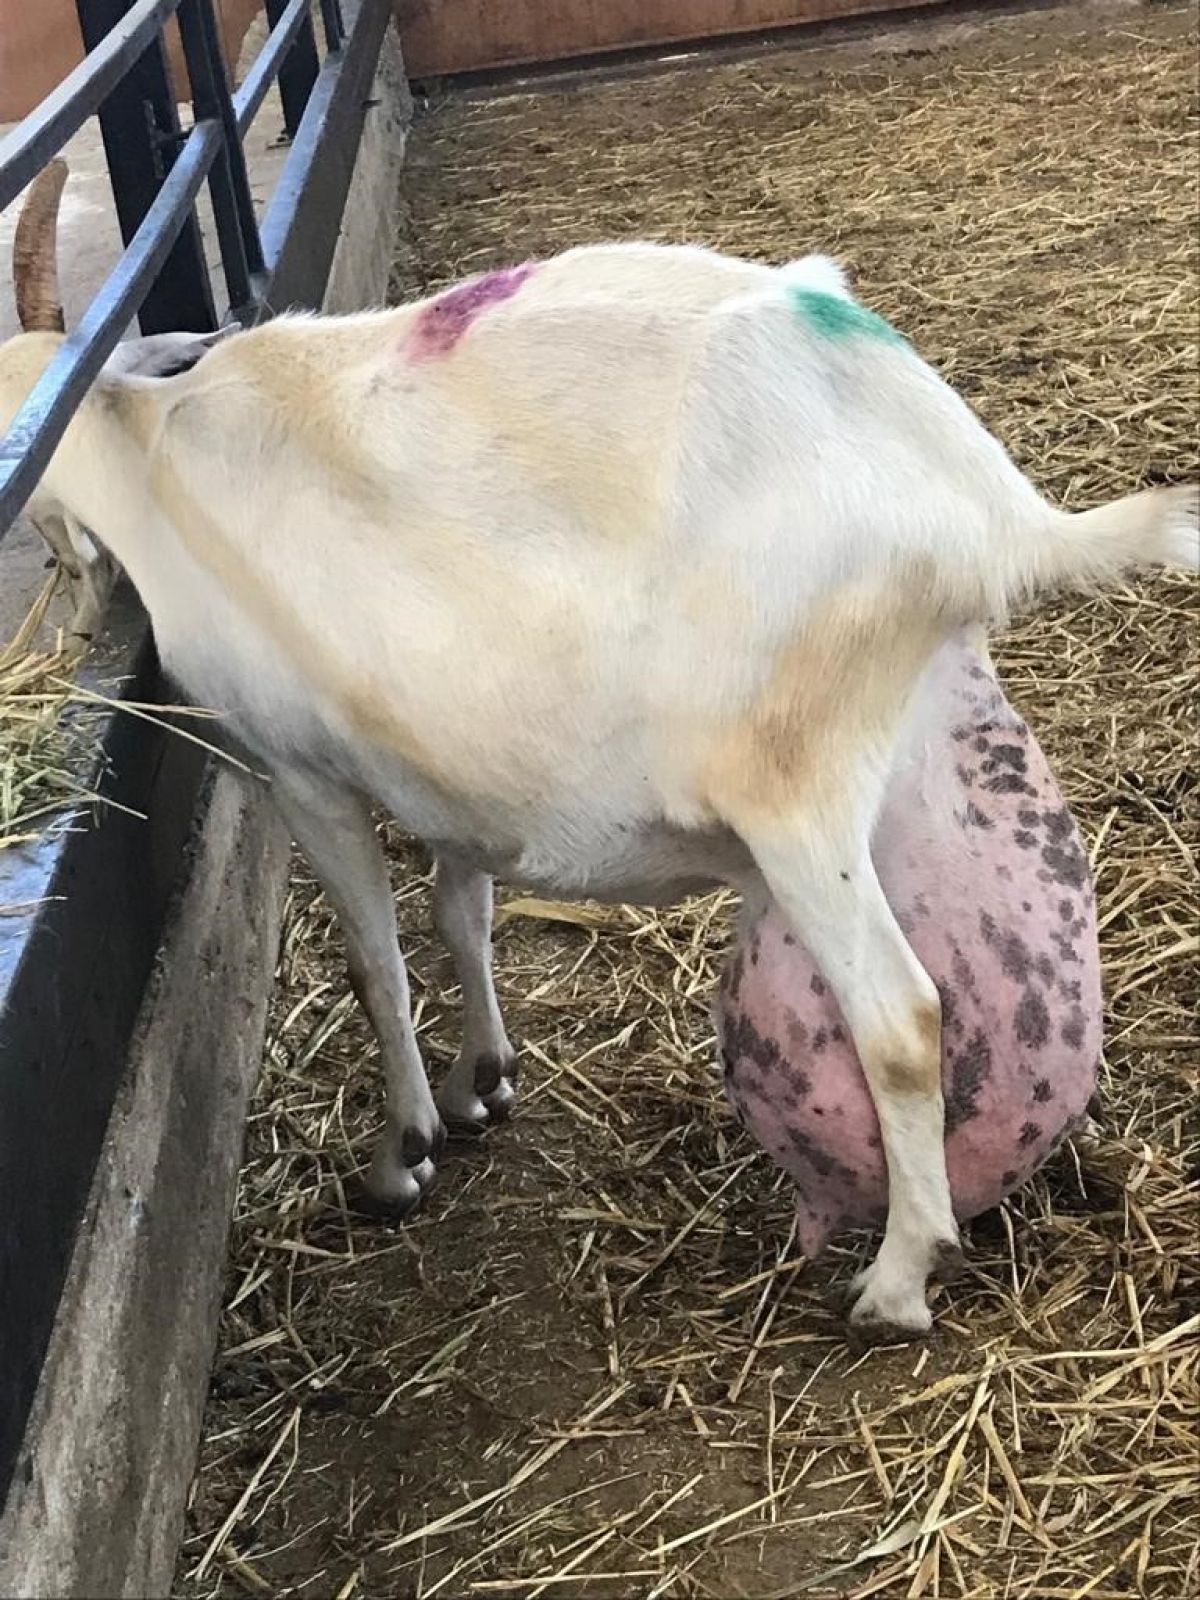 Bursa da ağırlığının yarısı kadar süt veren keçi şaşırttı #11